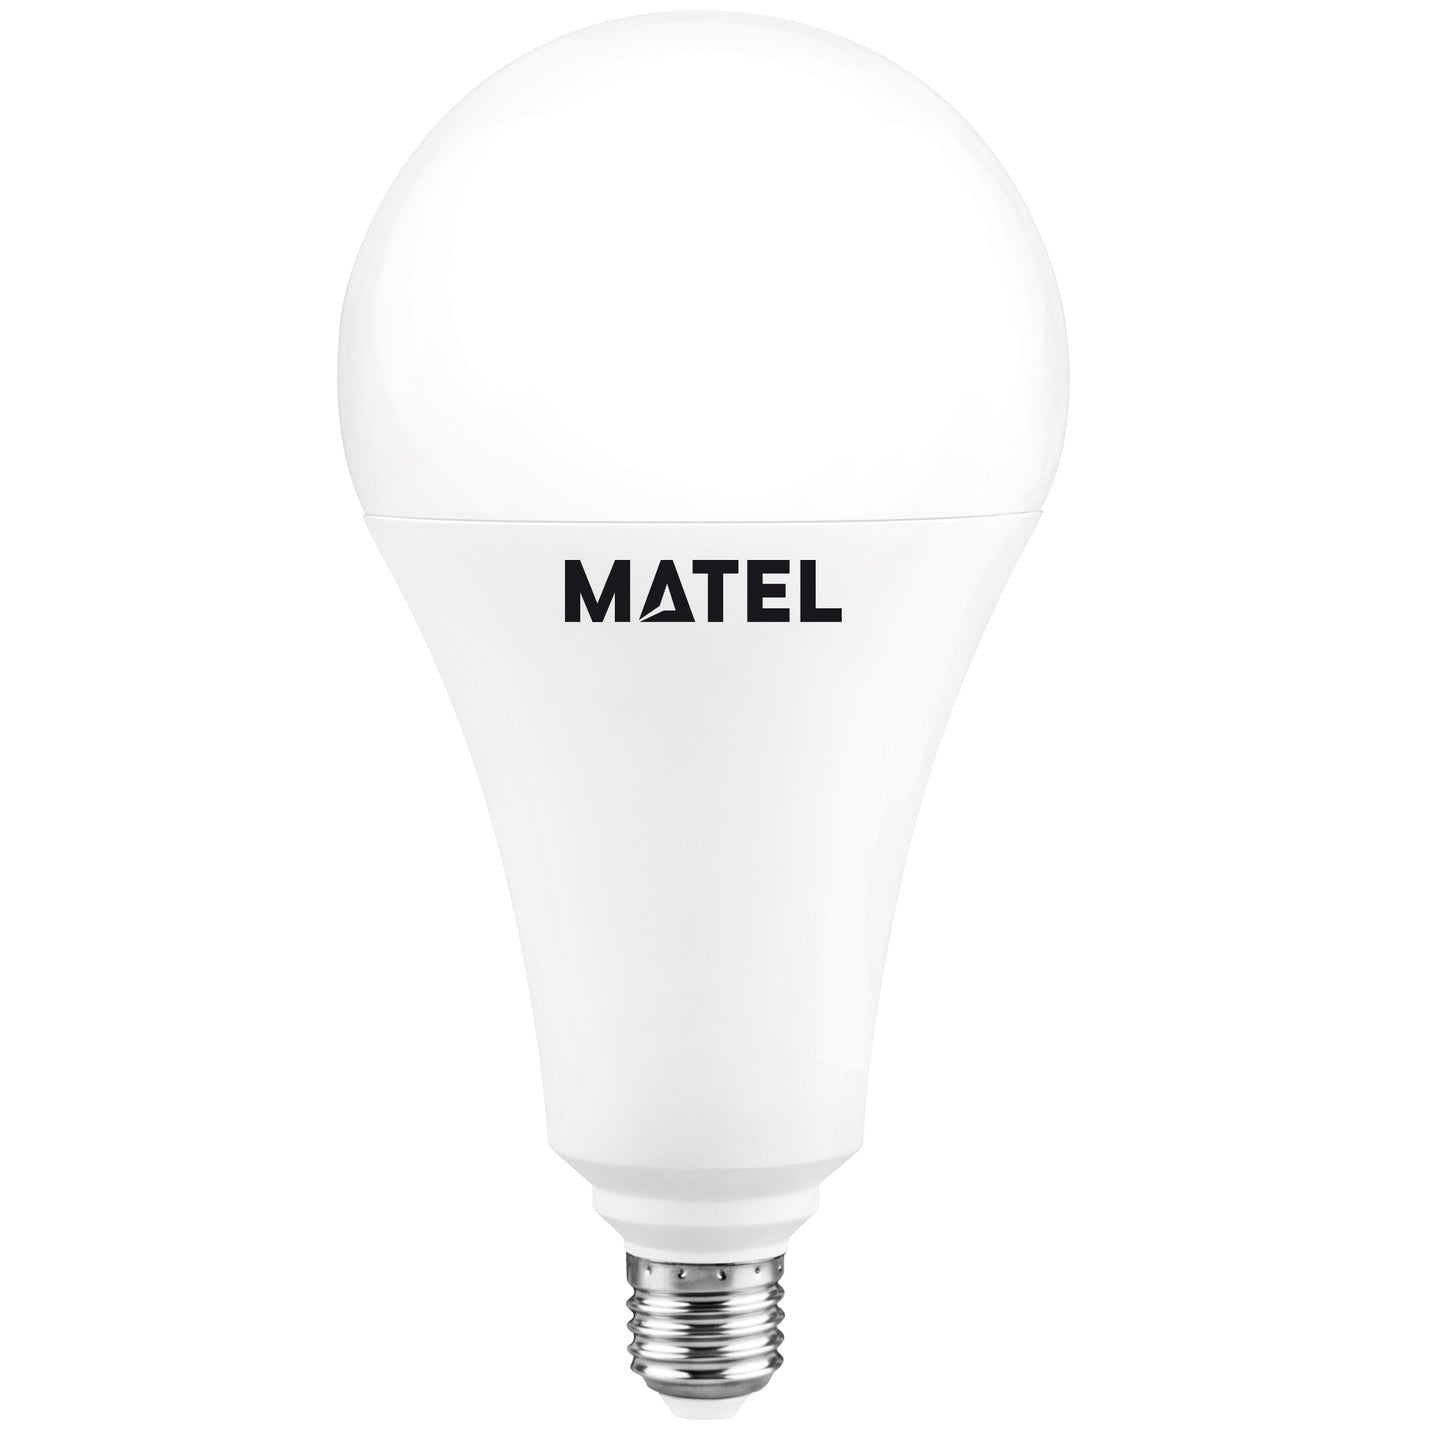 LAMPE LED NORMALE E27 270º A60 A120 4W-30W ATE 100LM/W 230V AC 